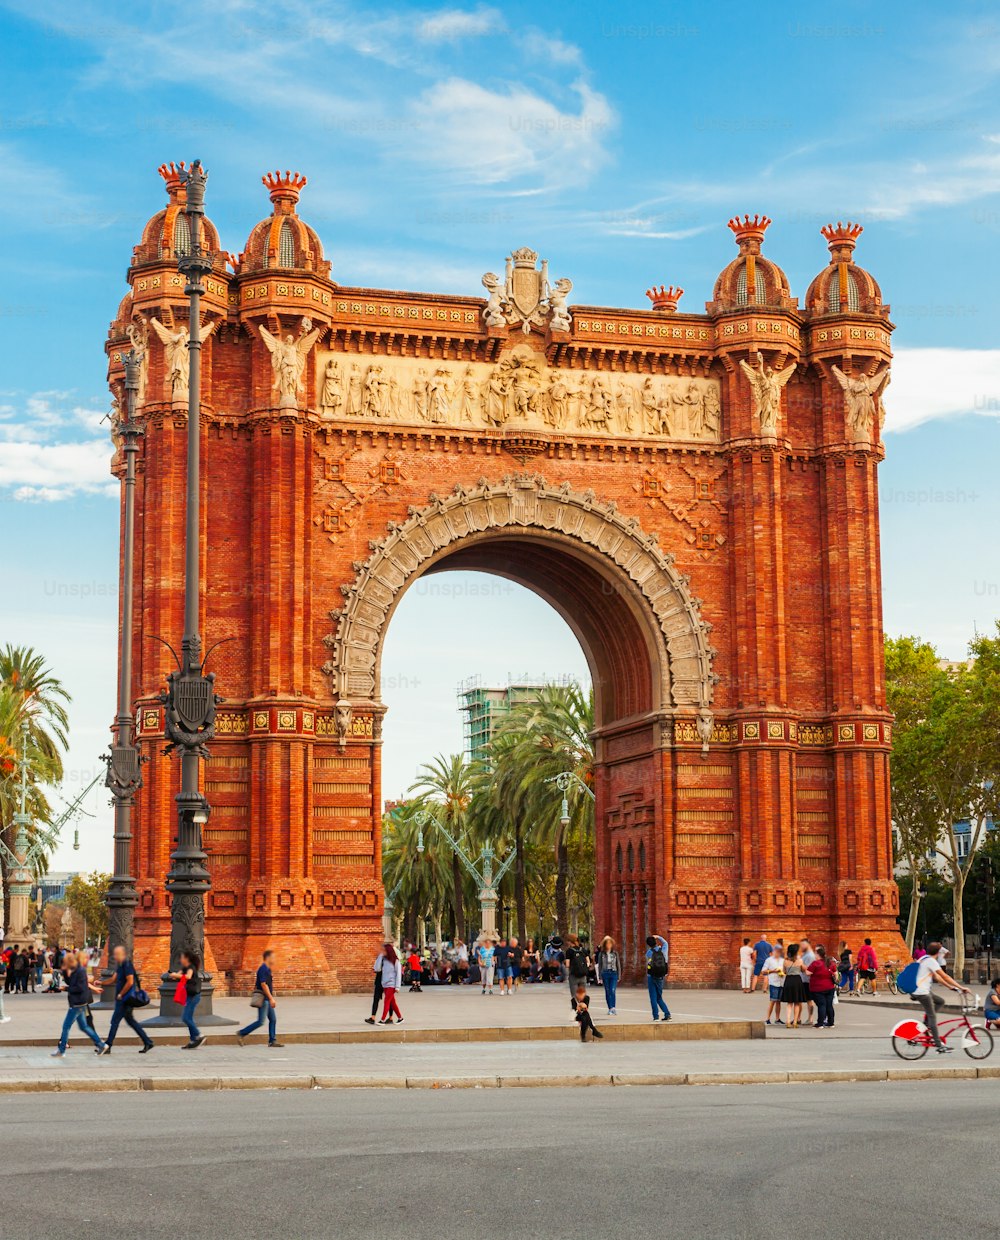 凱旋門または凱旋門は、�スペインのカタルーニャ地方のバルセロナ市にある凱旋門です